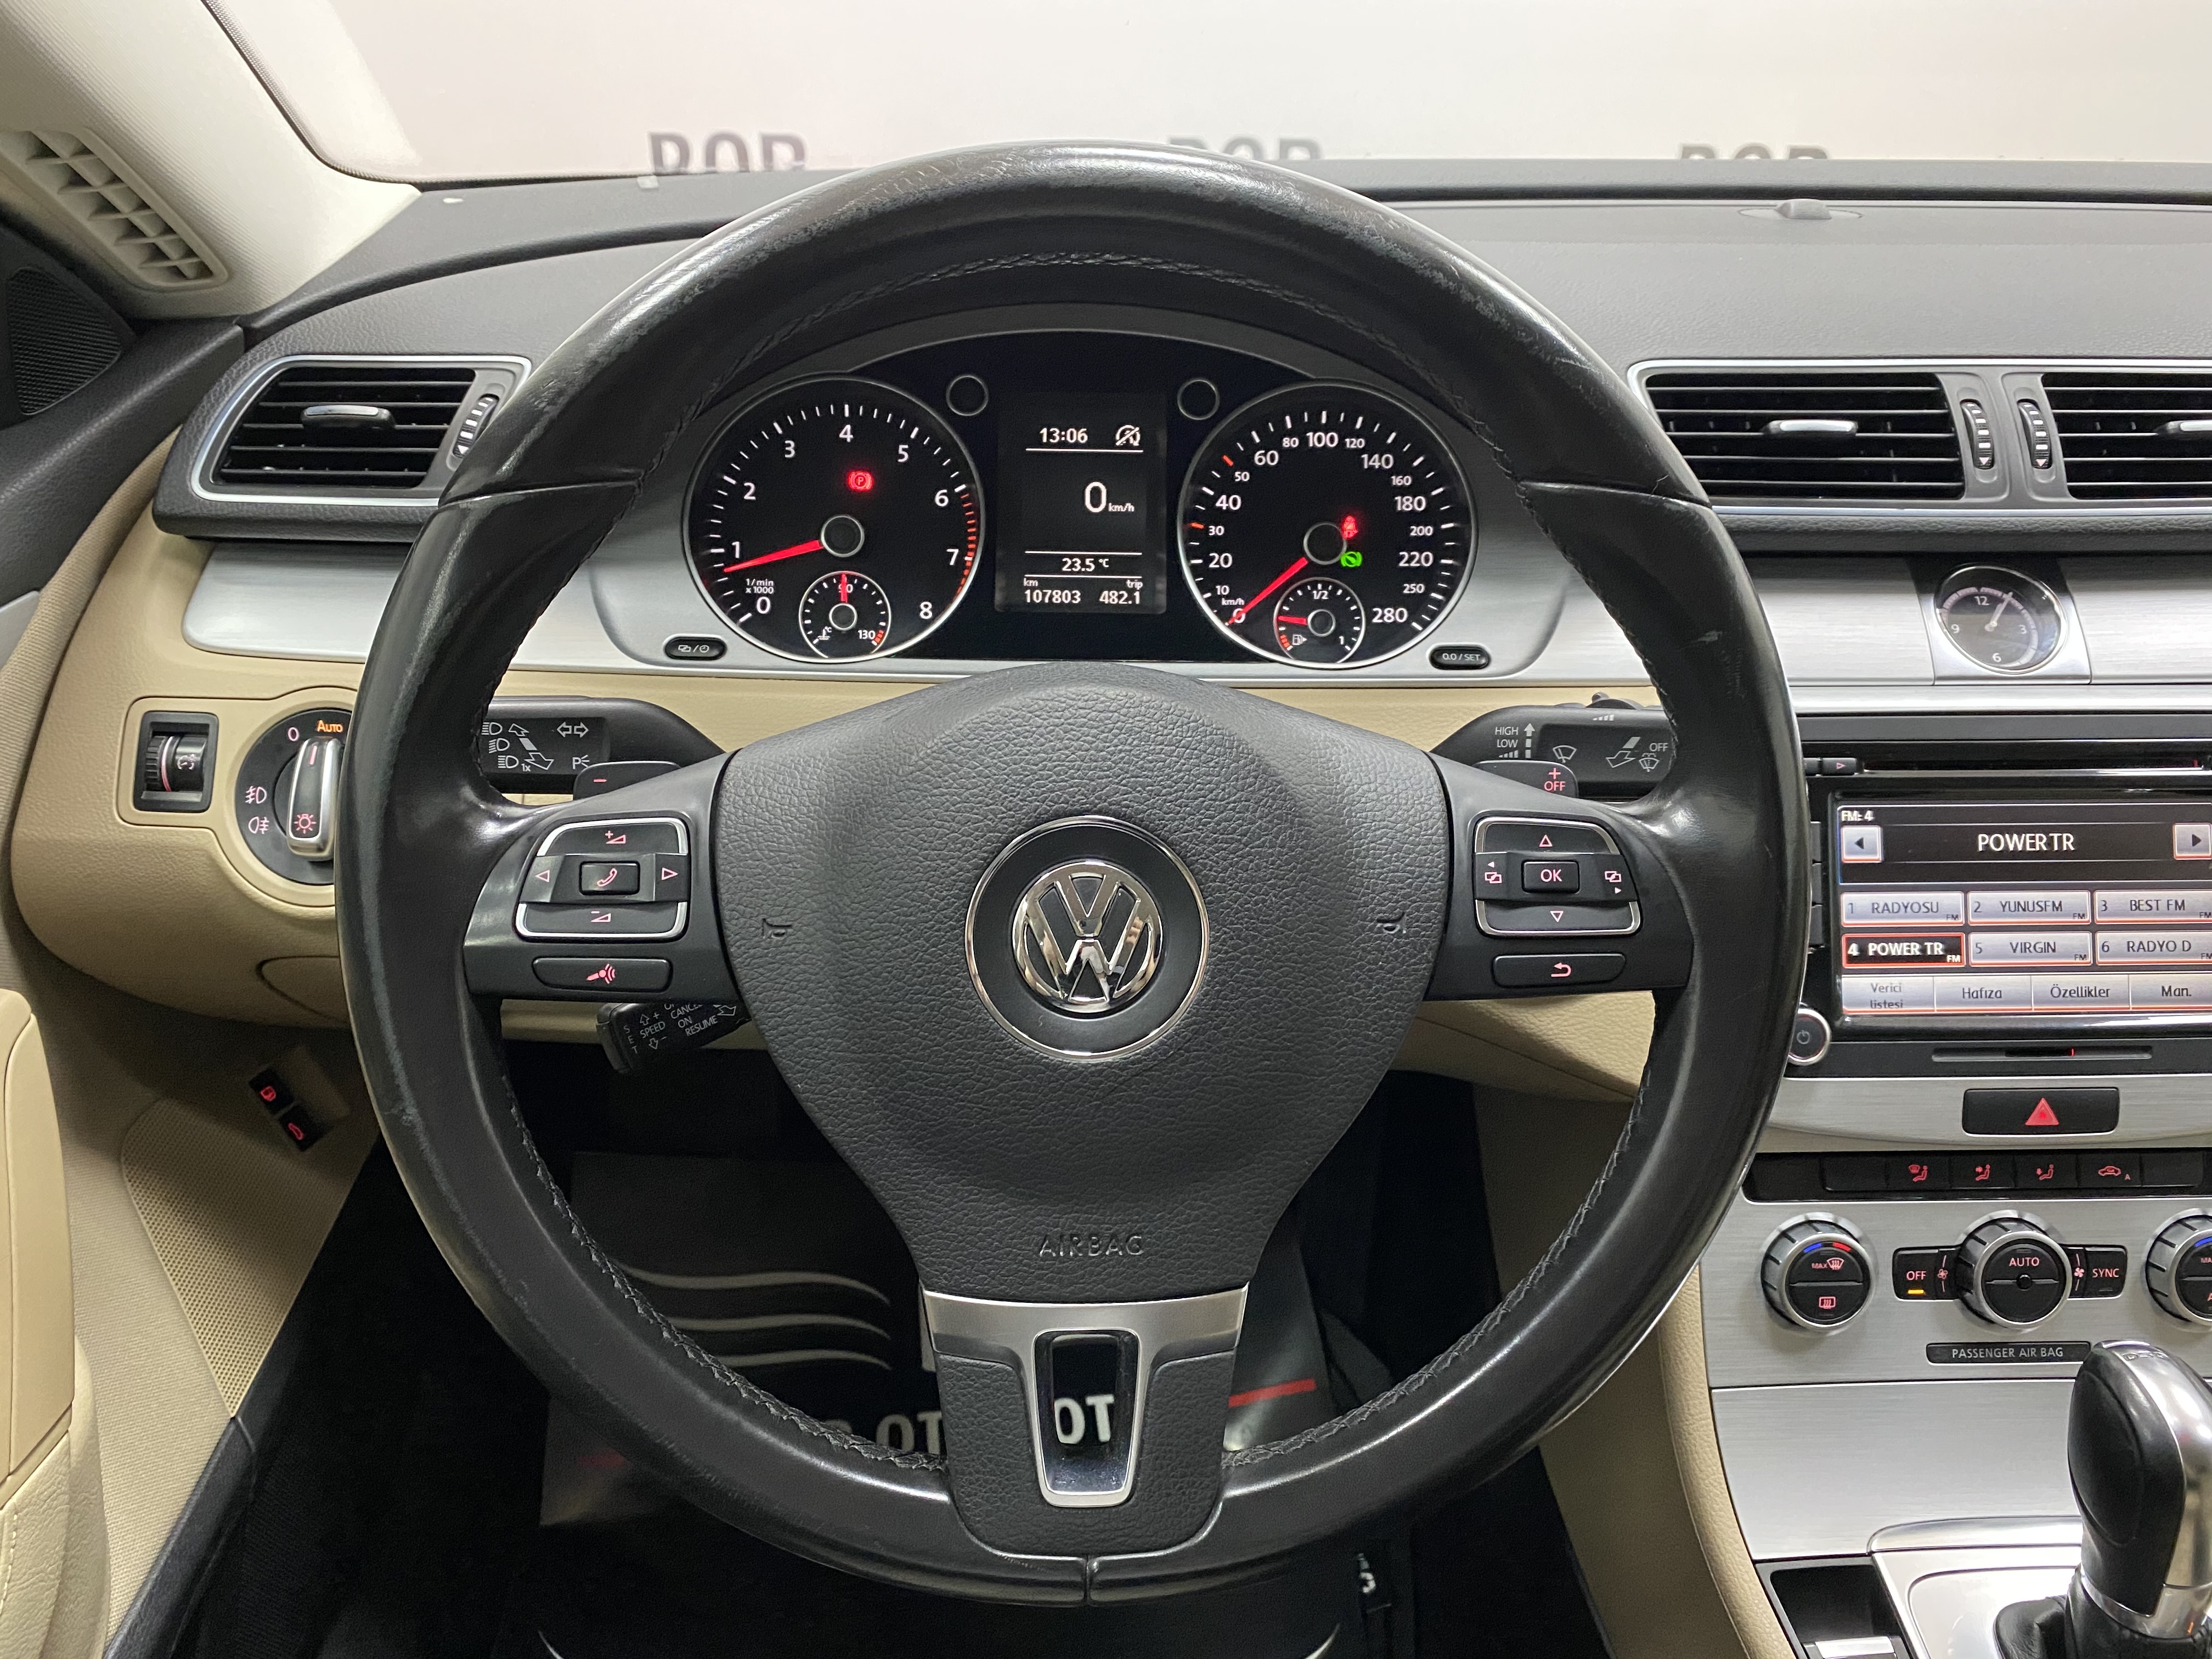 2013*VW CC 1.4 TSI Sportline*Dsg*Led*Xenon*107.000 Km’de*Bakımlı full